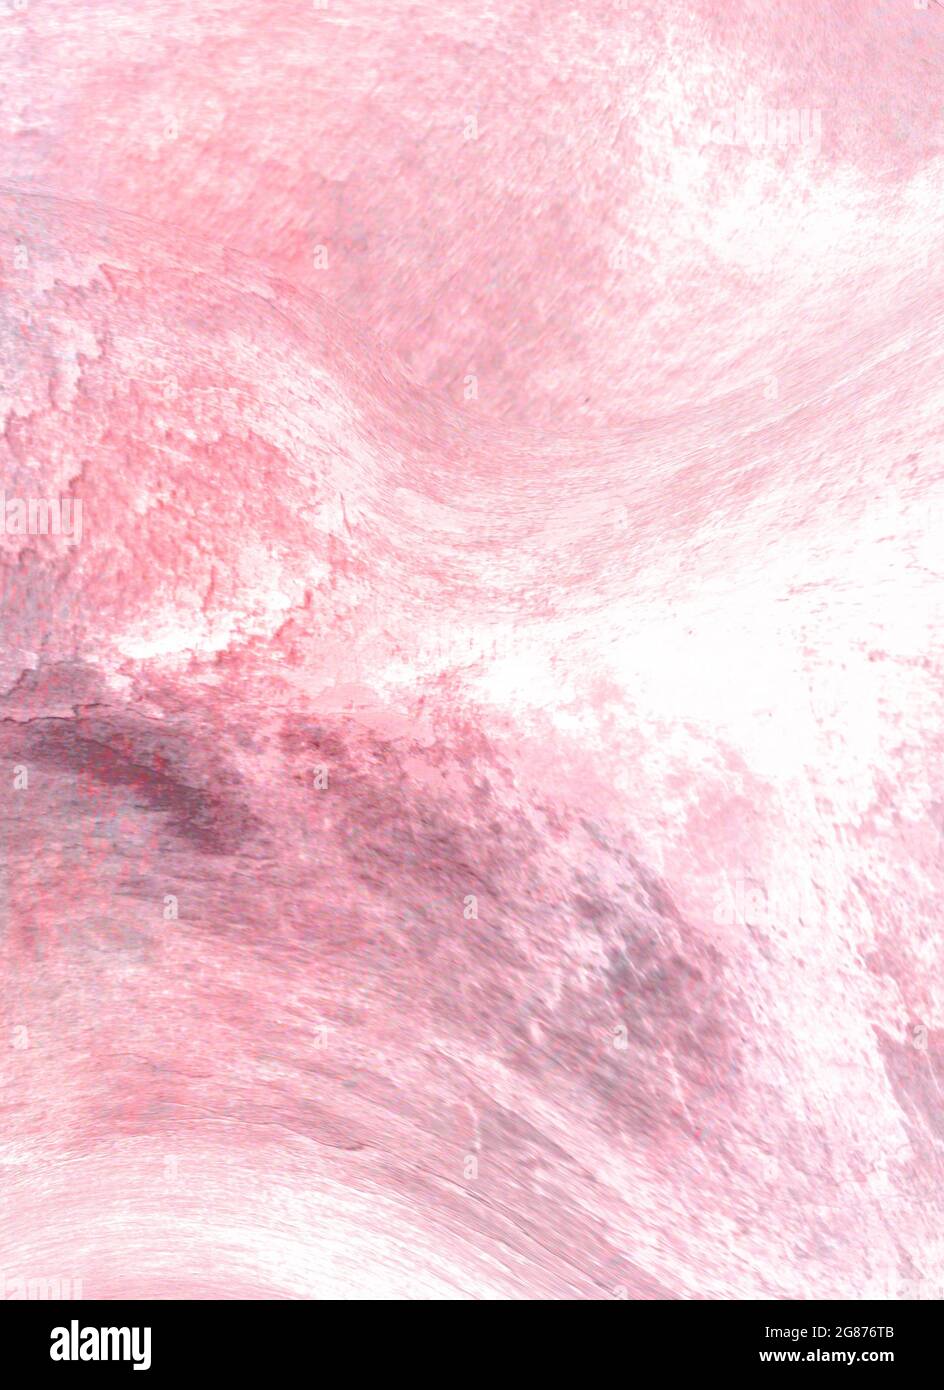 Sfondo rosa acquerello con sfumature e transizioni di colore lisce.  Illustrazione per sfondi, texture, tessuti, poster, striscioni e creativi d  Foto stock - Alamy